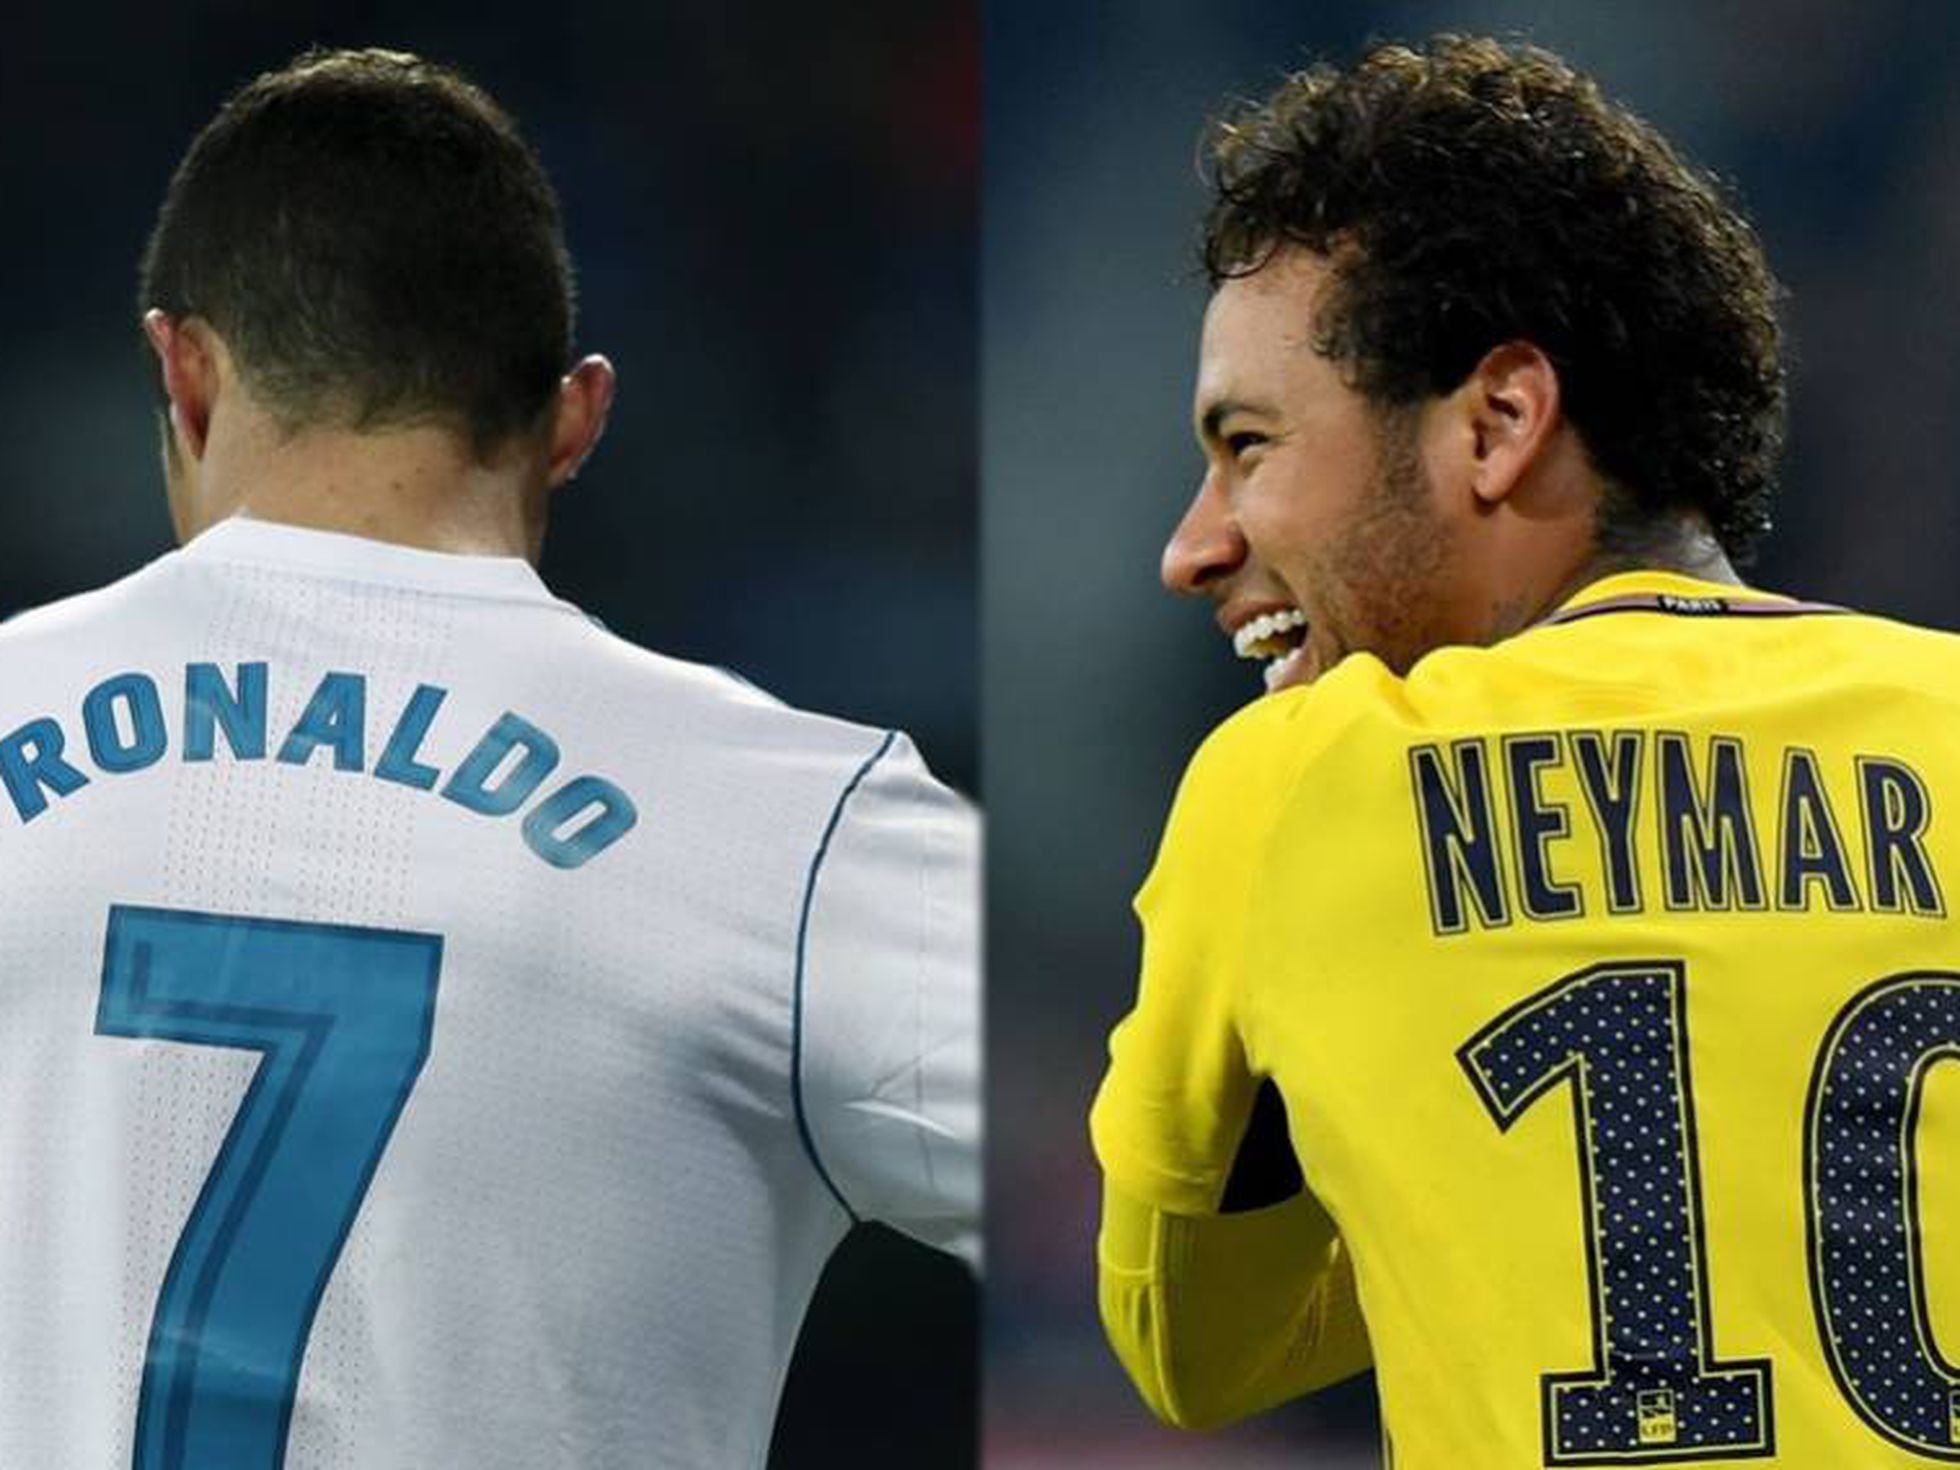 Hoje tem mais? Os títulos de Neymar e Cristiano Ronaldo por clubes